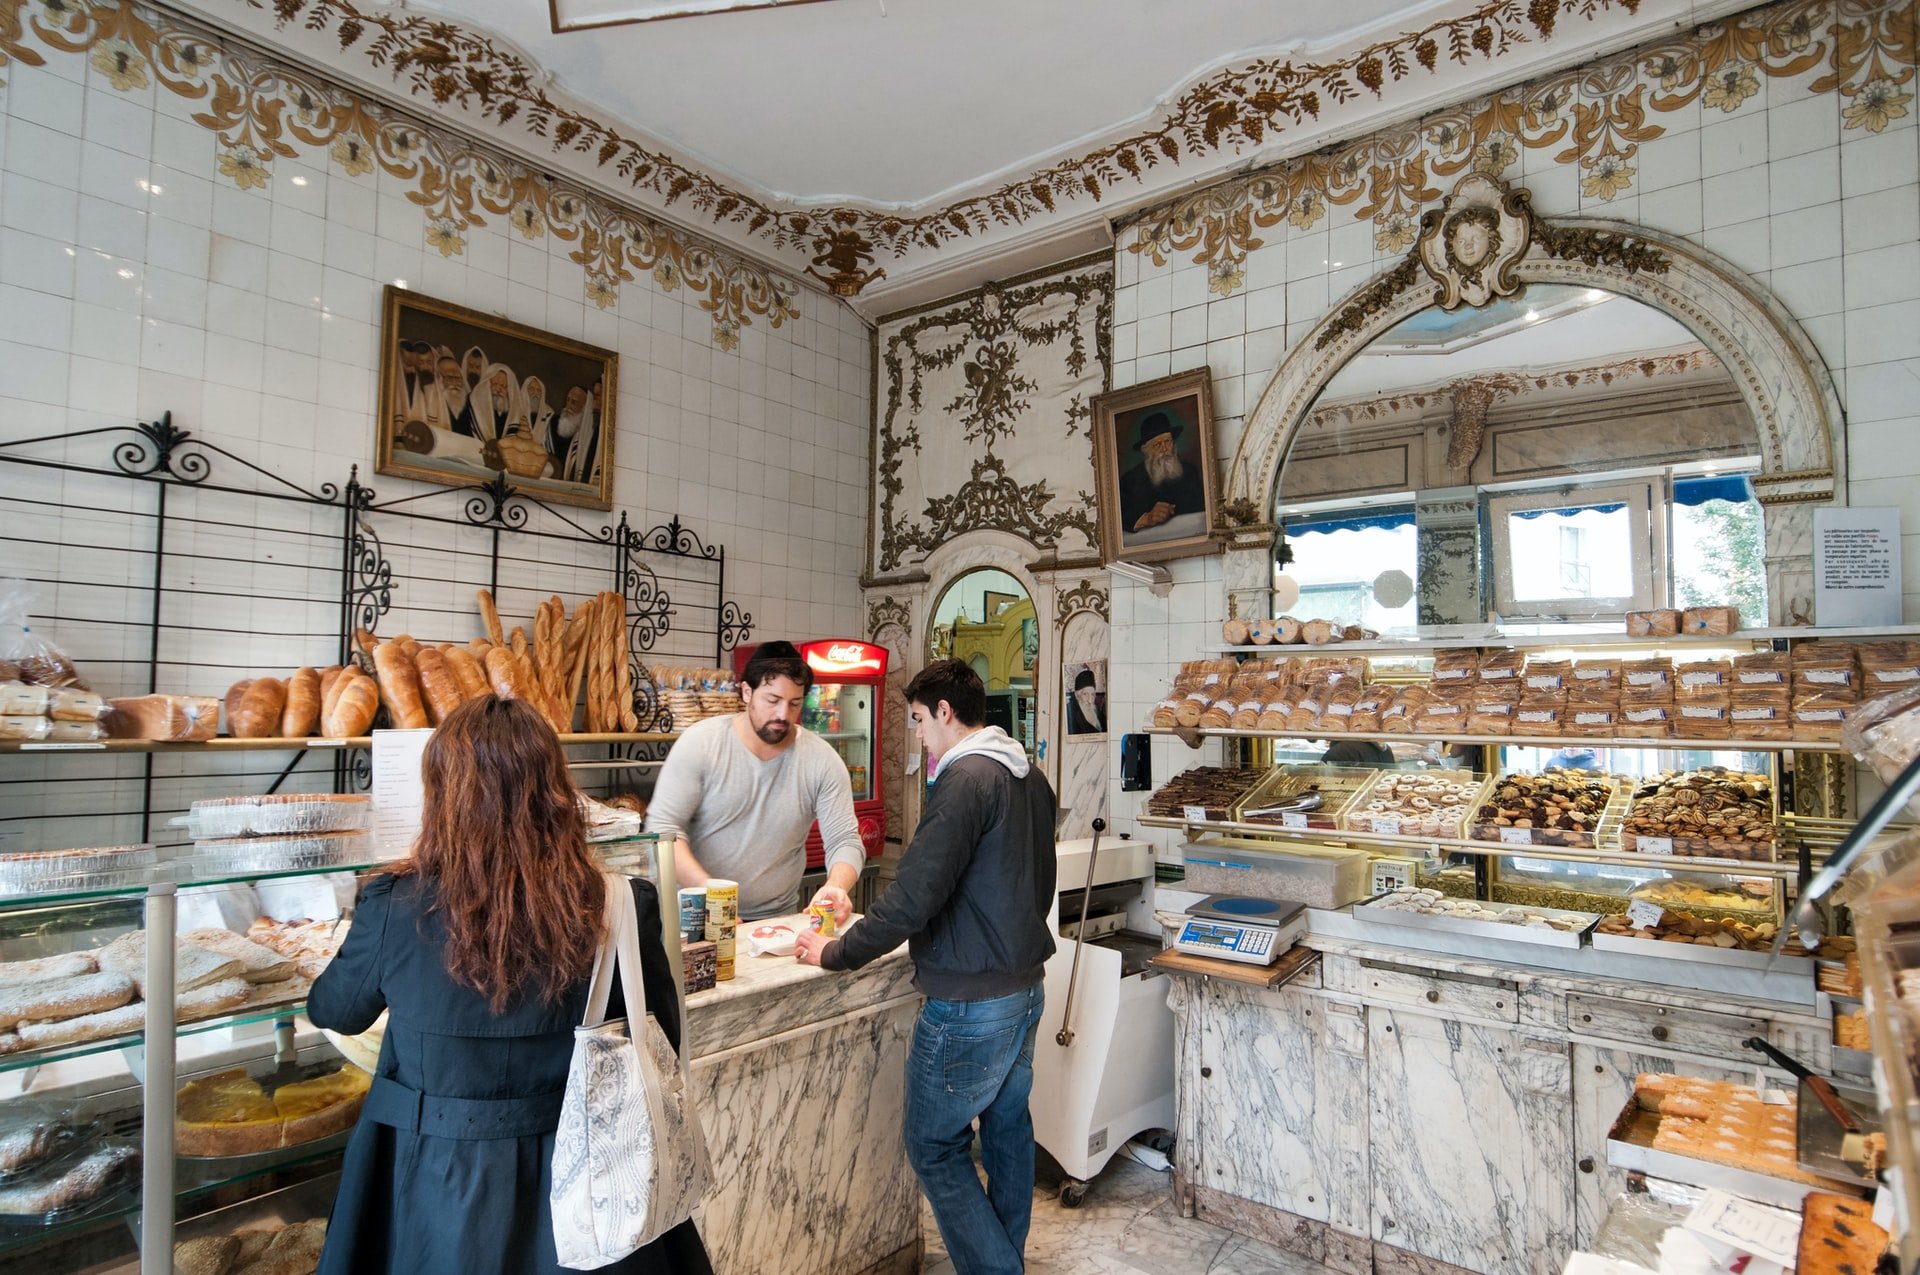 Boulangerie Etiquette for Paris - Everyday Parisian